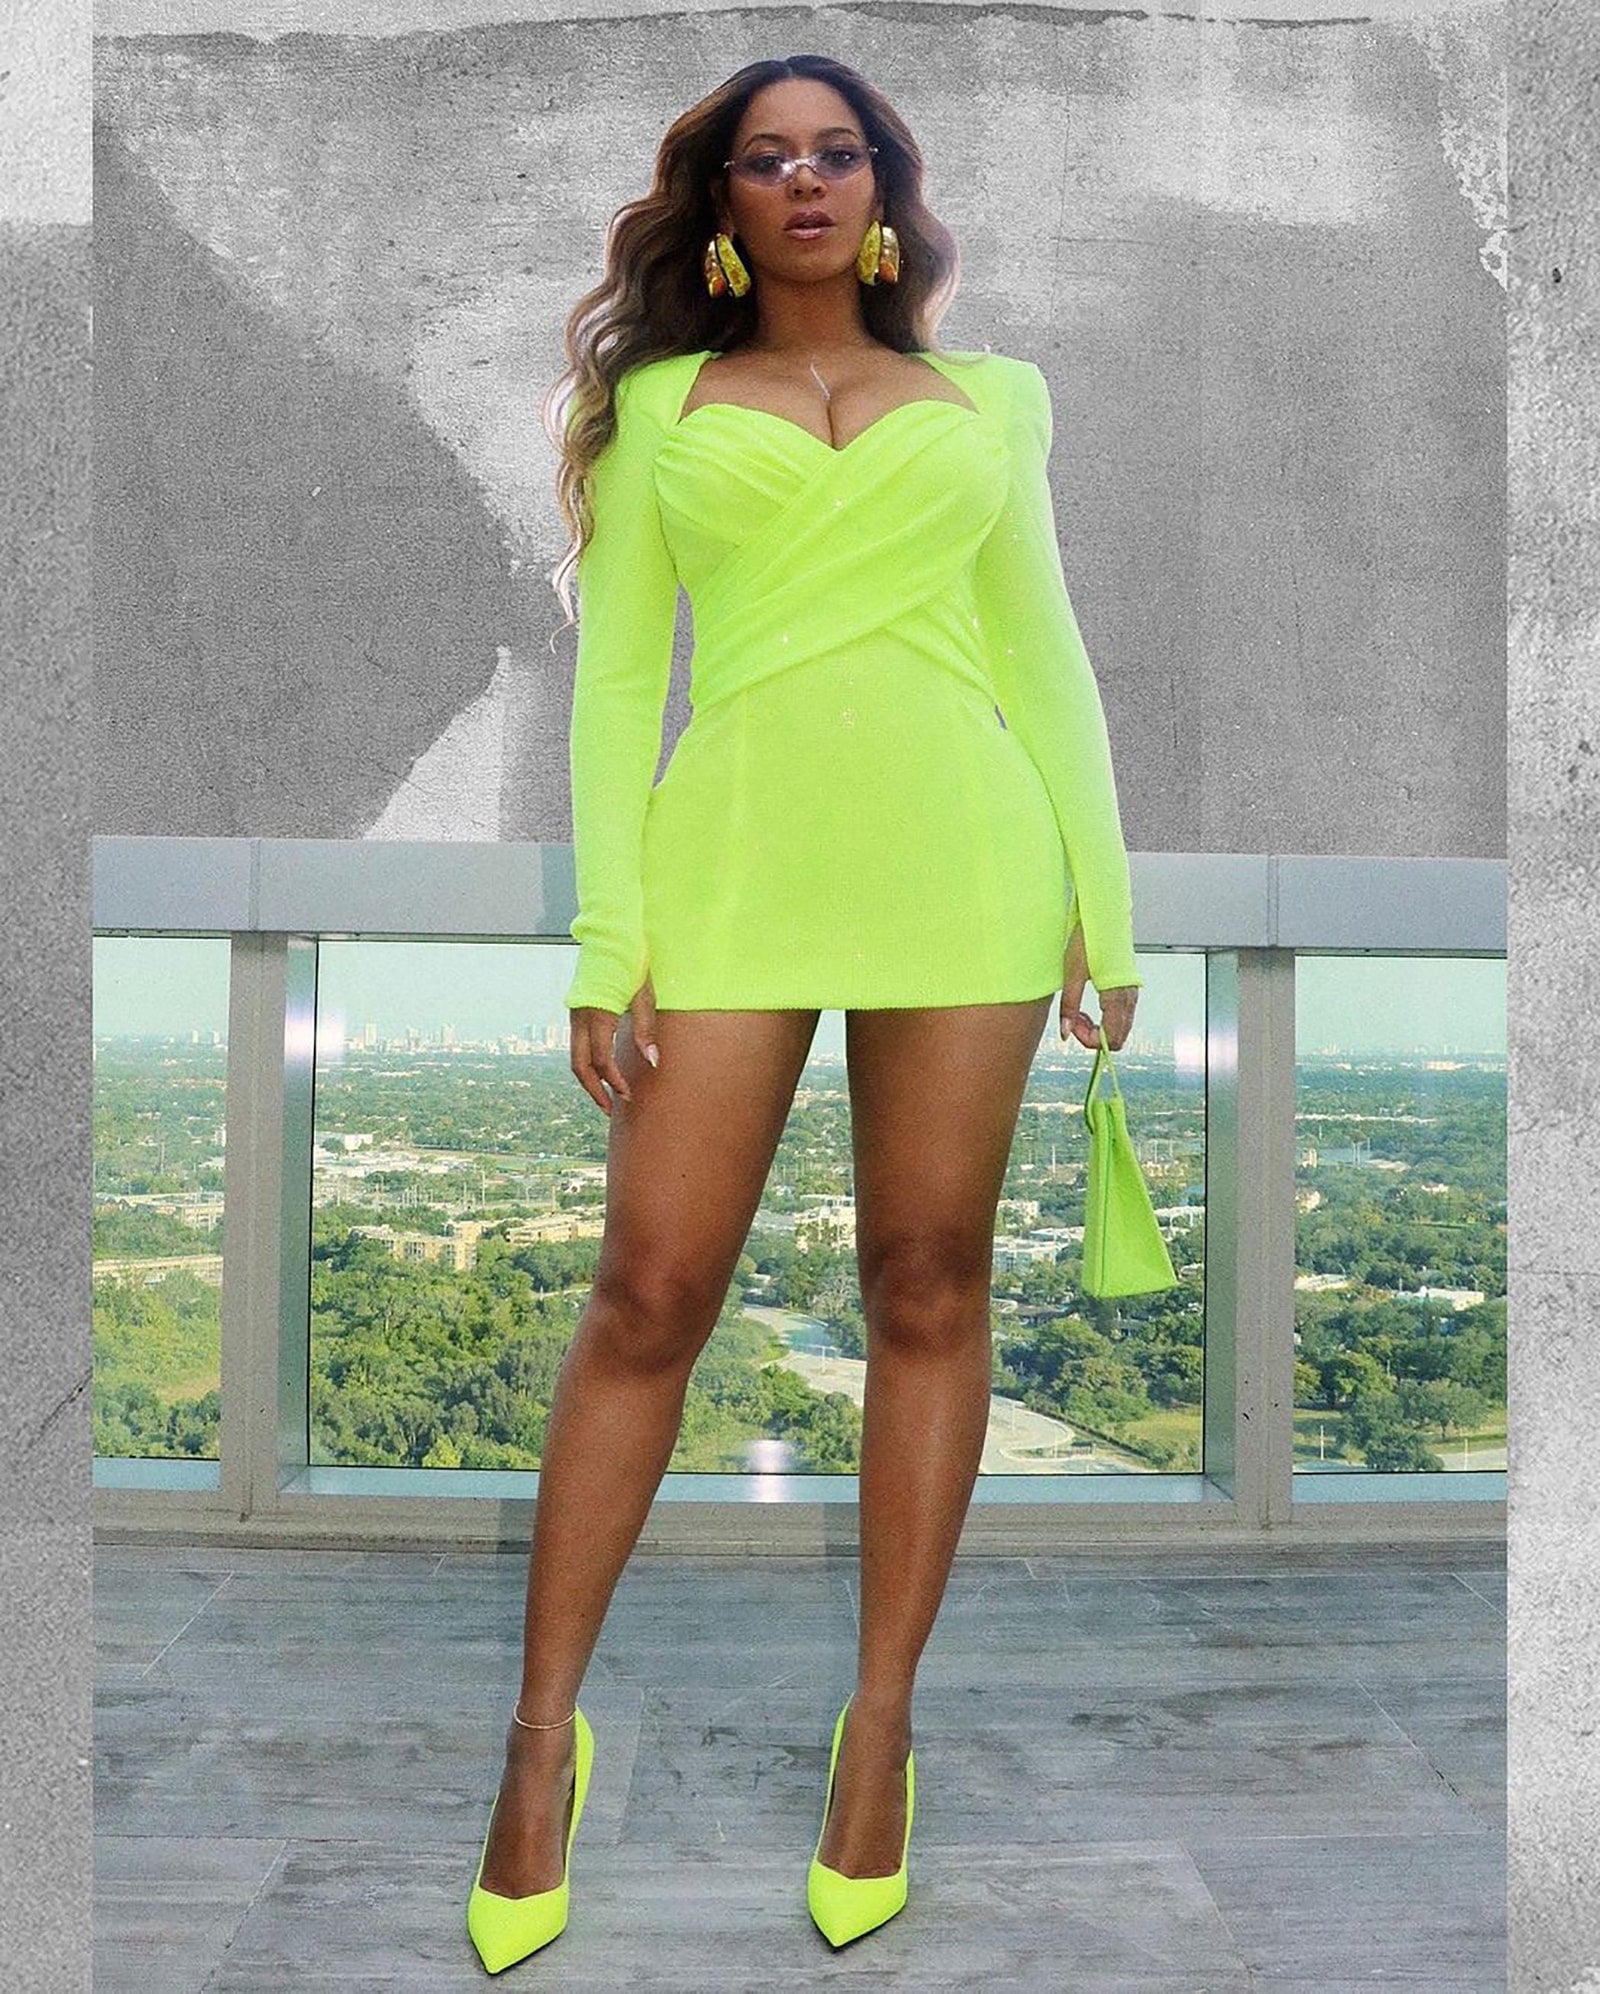 Beyoncé thể hiện kỹ năng stylist tài tình khi gom những items có màu xanh neon như váy của Balmain, túi Medea và kính râm Philo để trở nên ấn tượng và sành điệu trong set đồ neon bắt mắt.